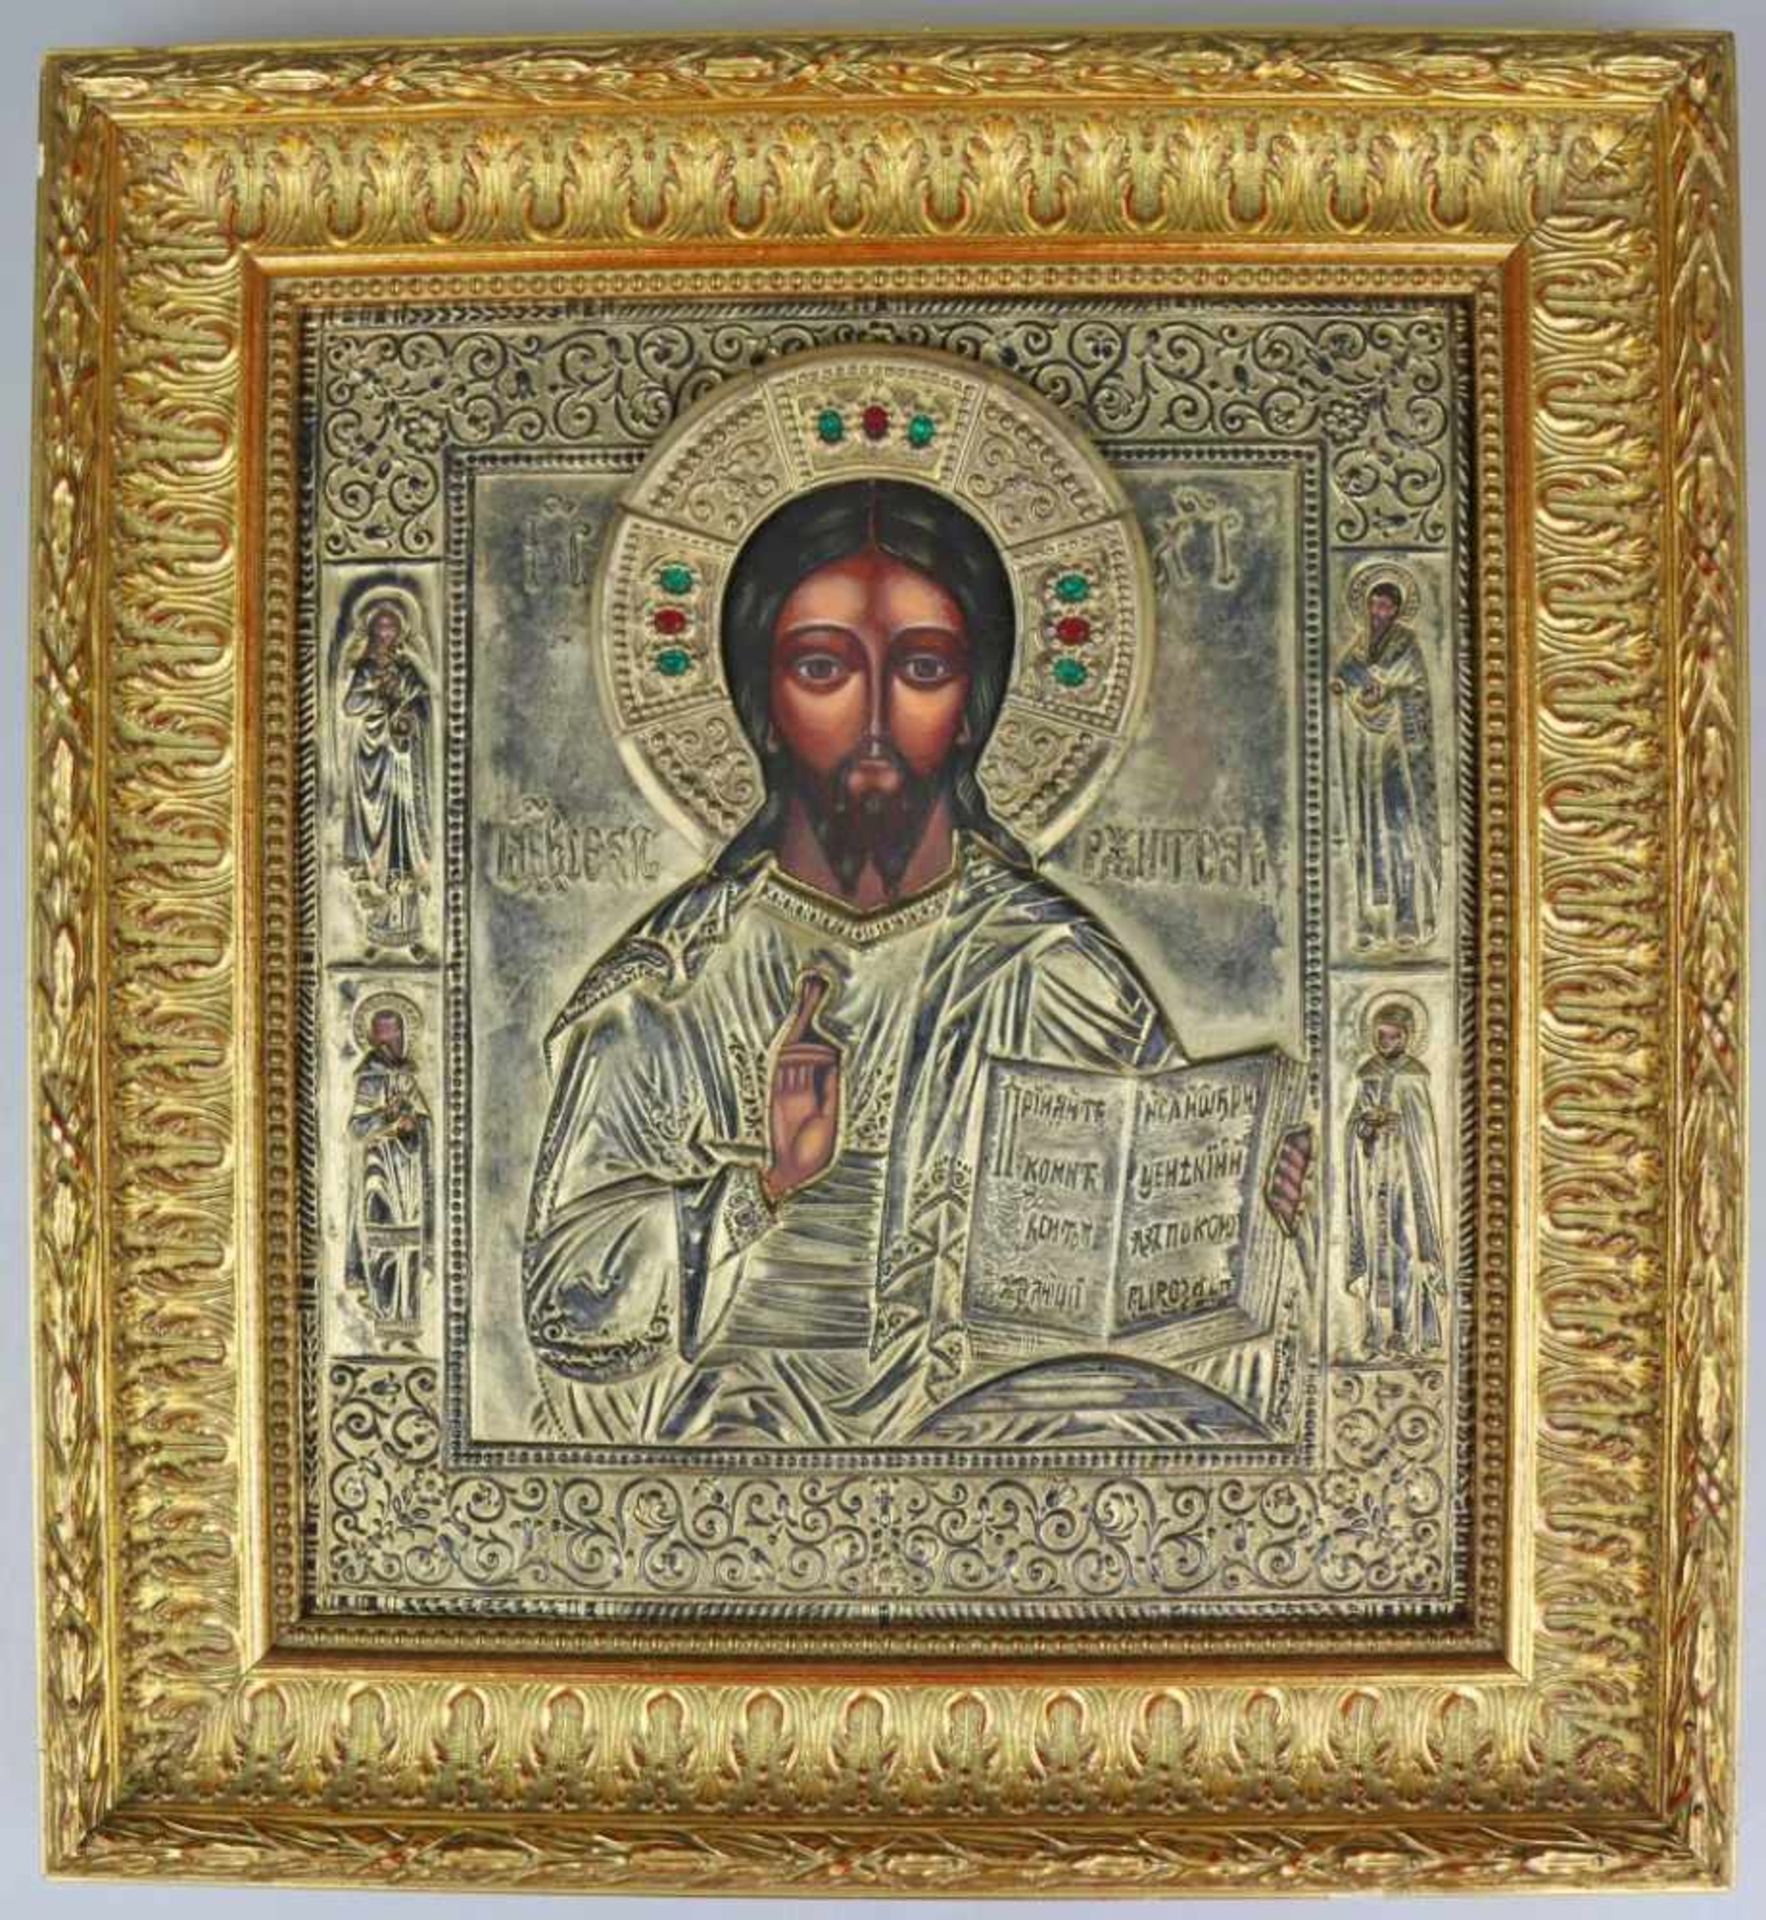 Ikone, Christus Pantokrator, Russland, 19. Jh., Holz mit Oklad. Der Weltenherrscher als